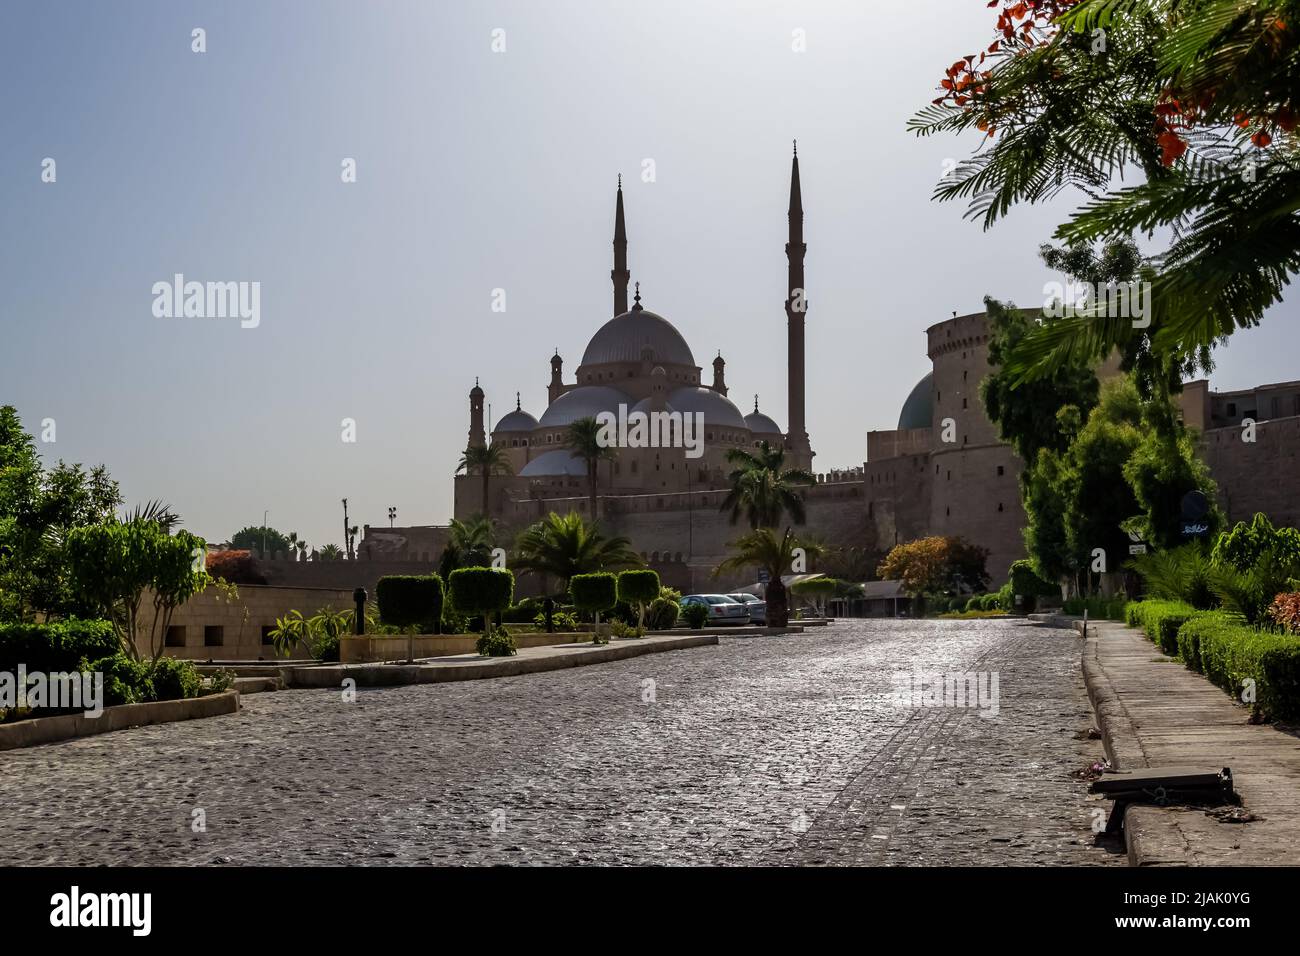 Dettagli architettonici della grande moschea di Muhammad Ali Pasha (moschea dell'Alabastro) al Cairo, Egitto Foto Stock